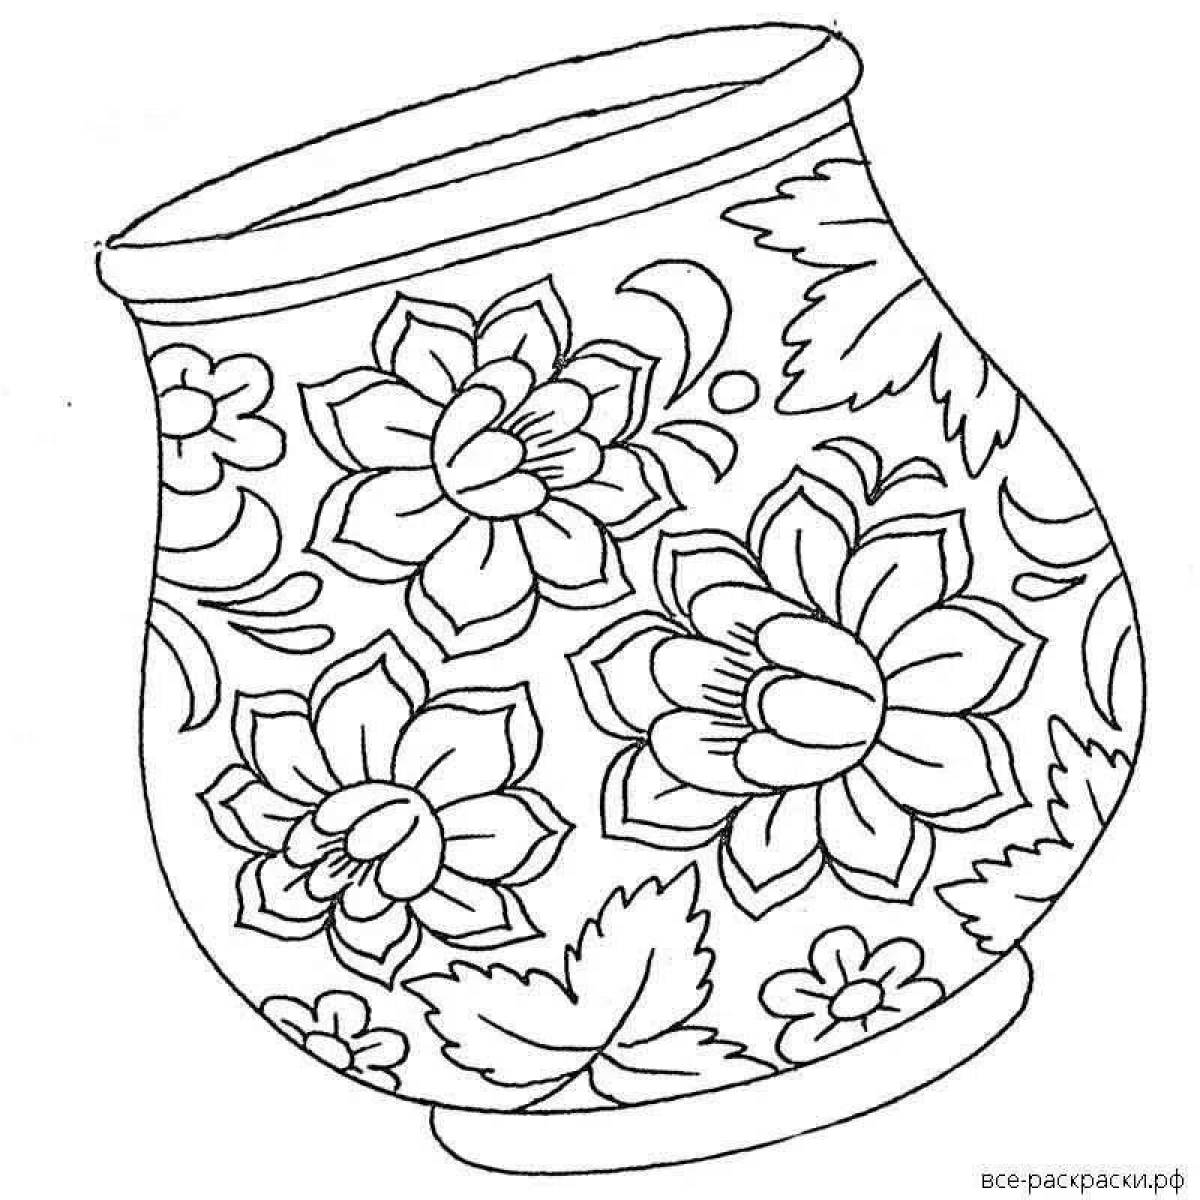 Colouring colorful gzhel vase